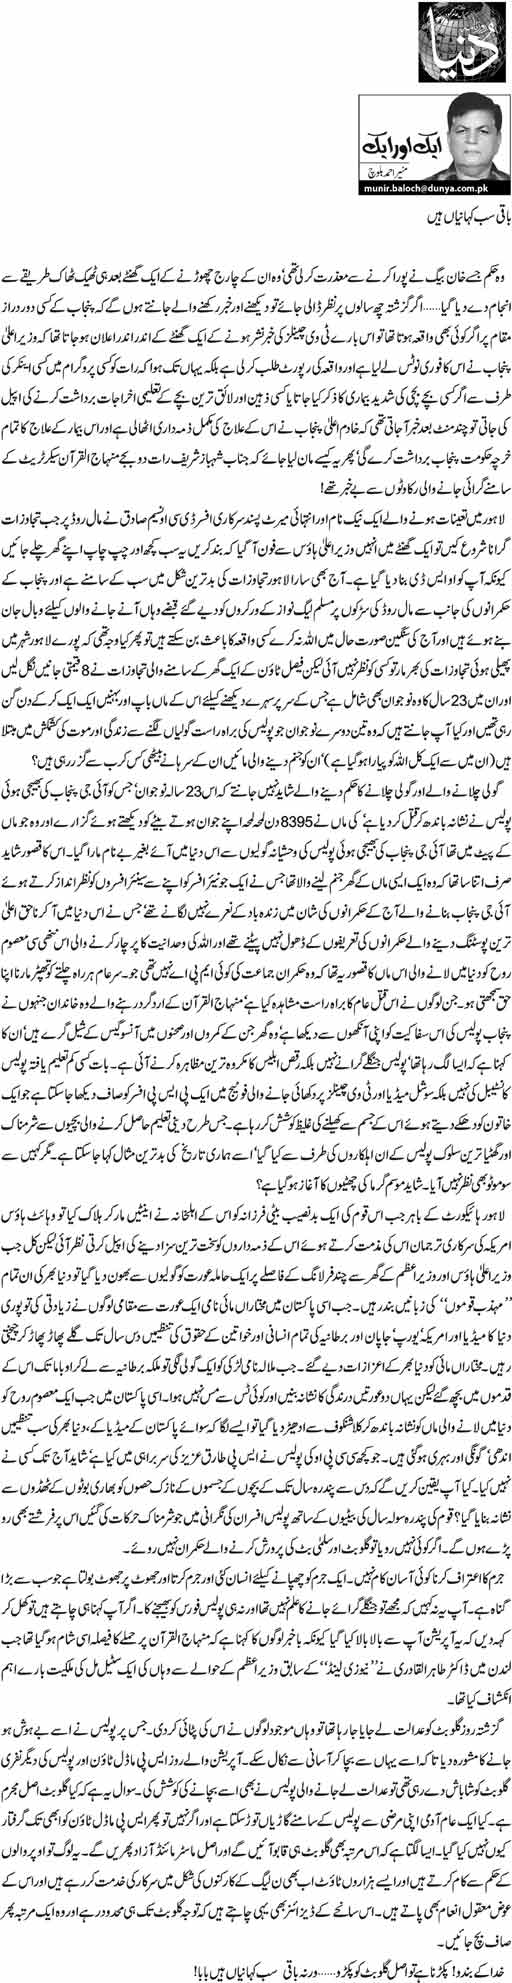 Print Media Coverage Daily Dunya - Munir Ahmad Baloch